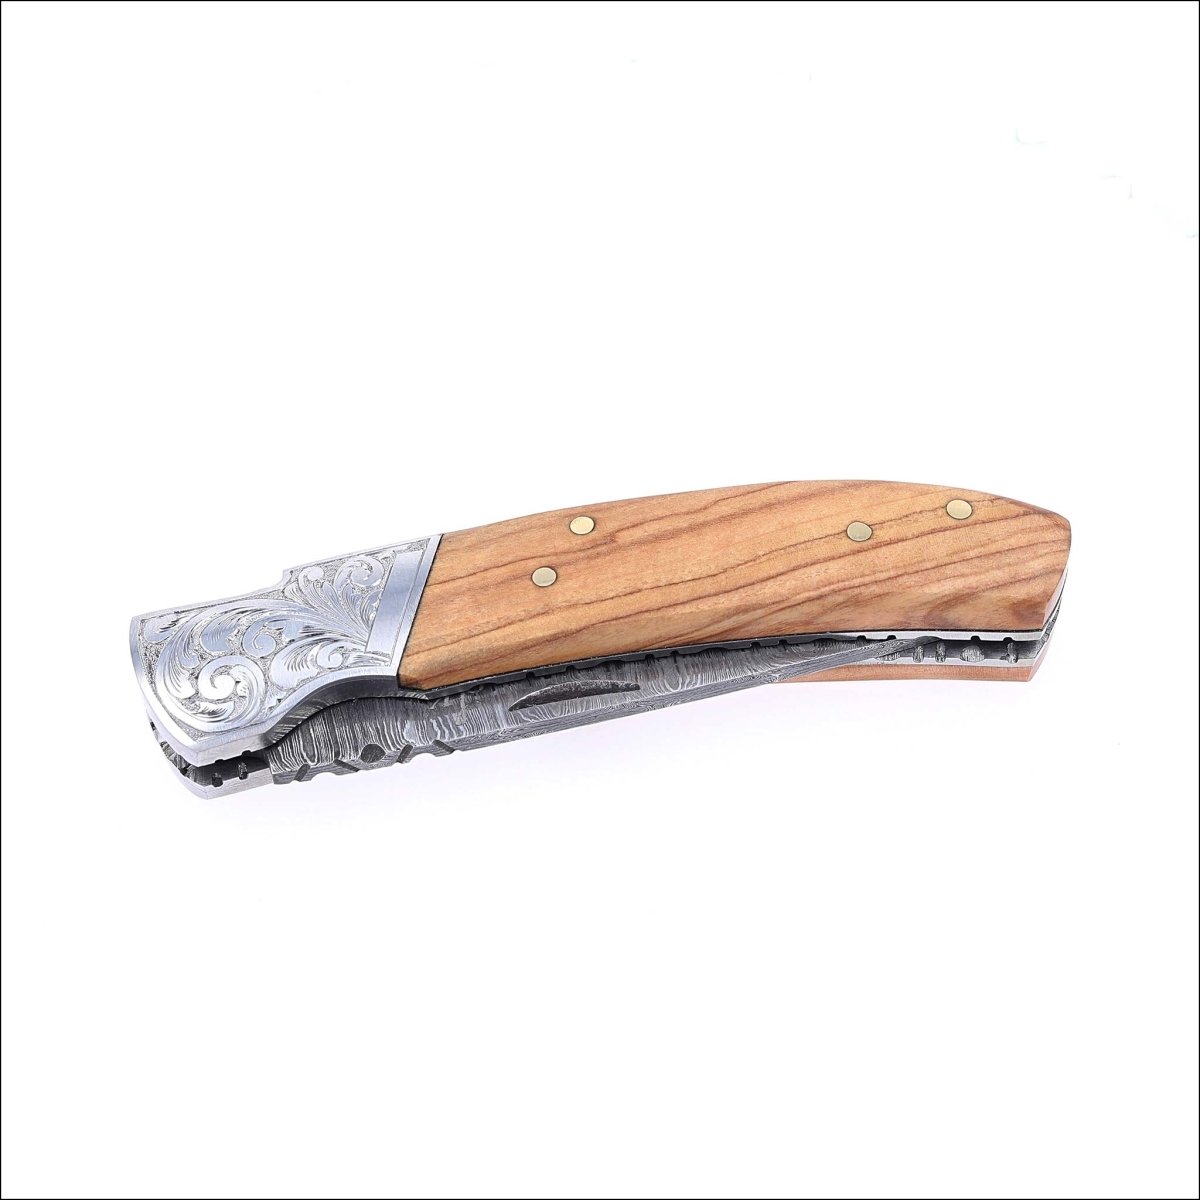 Damascus Steel Folding Knife Hand Engraved Olive Wood Handle - JewelsmithFolding Knife